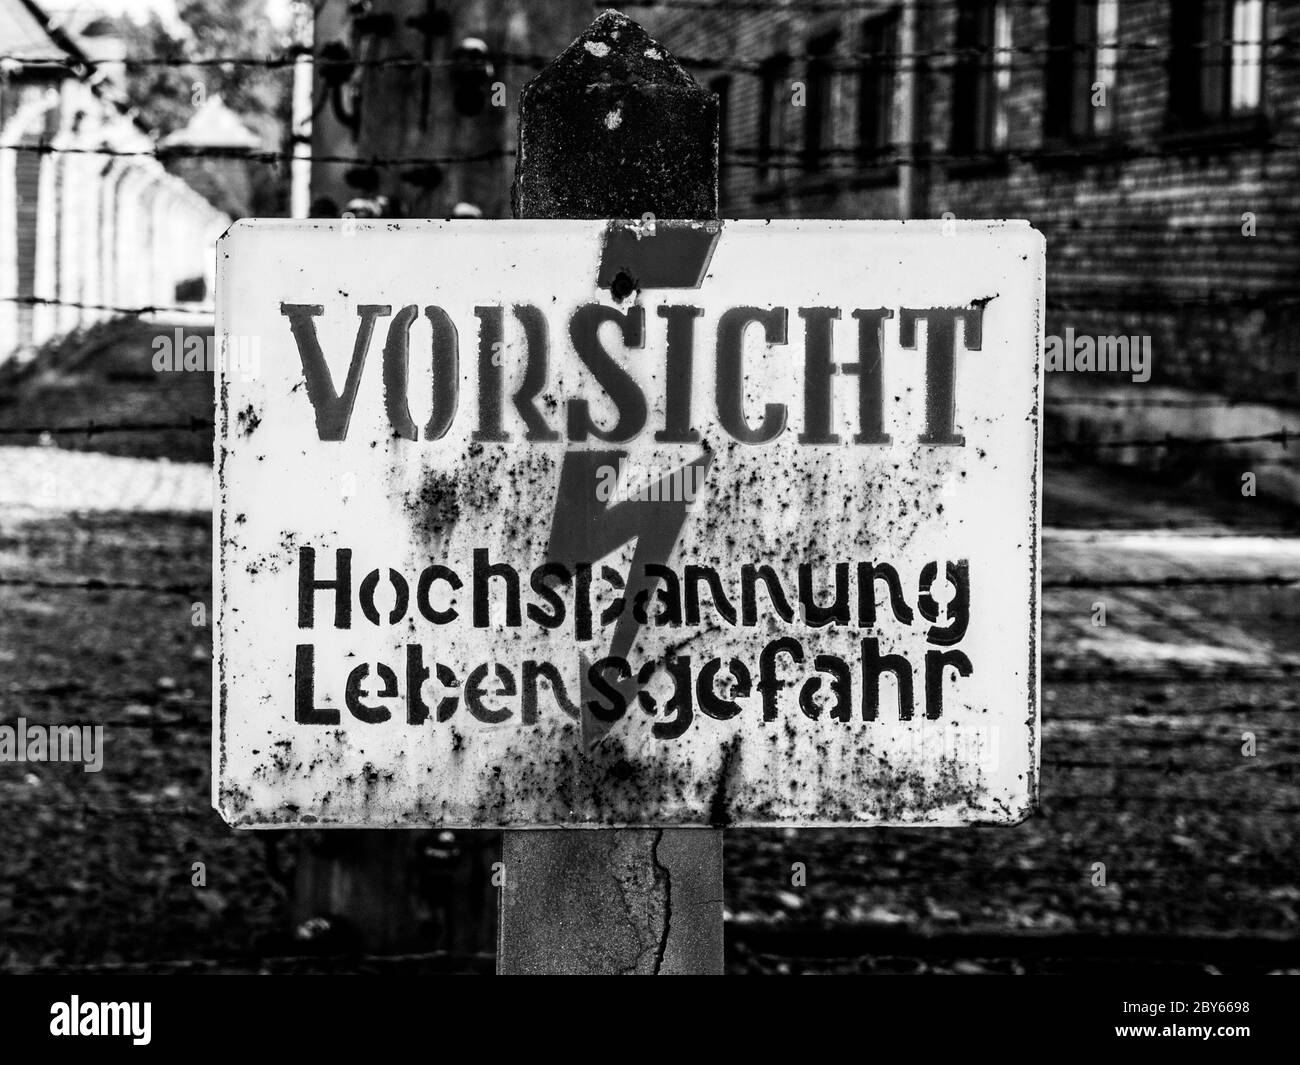 Cartello di allarme sul recinto elettrico nel campo di concentramento di Oswiecim, Polonia. Immagine in bianco e nero. Foto Stock